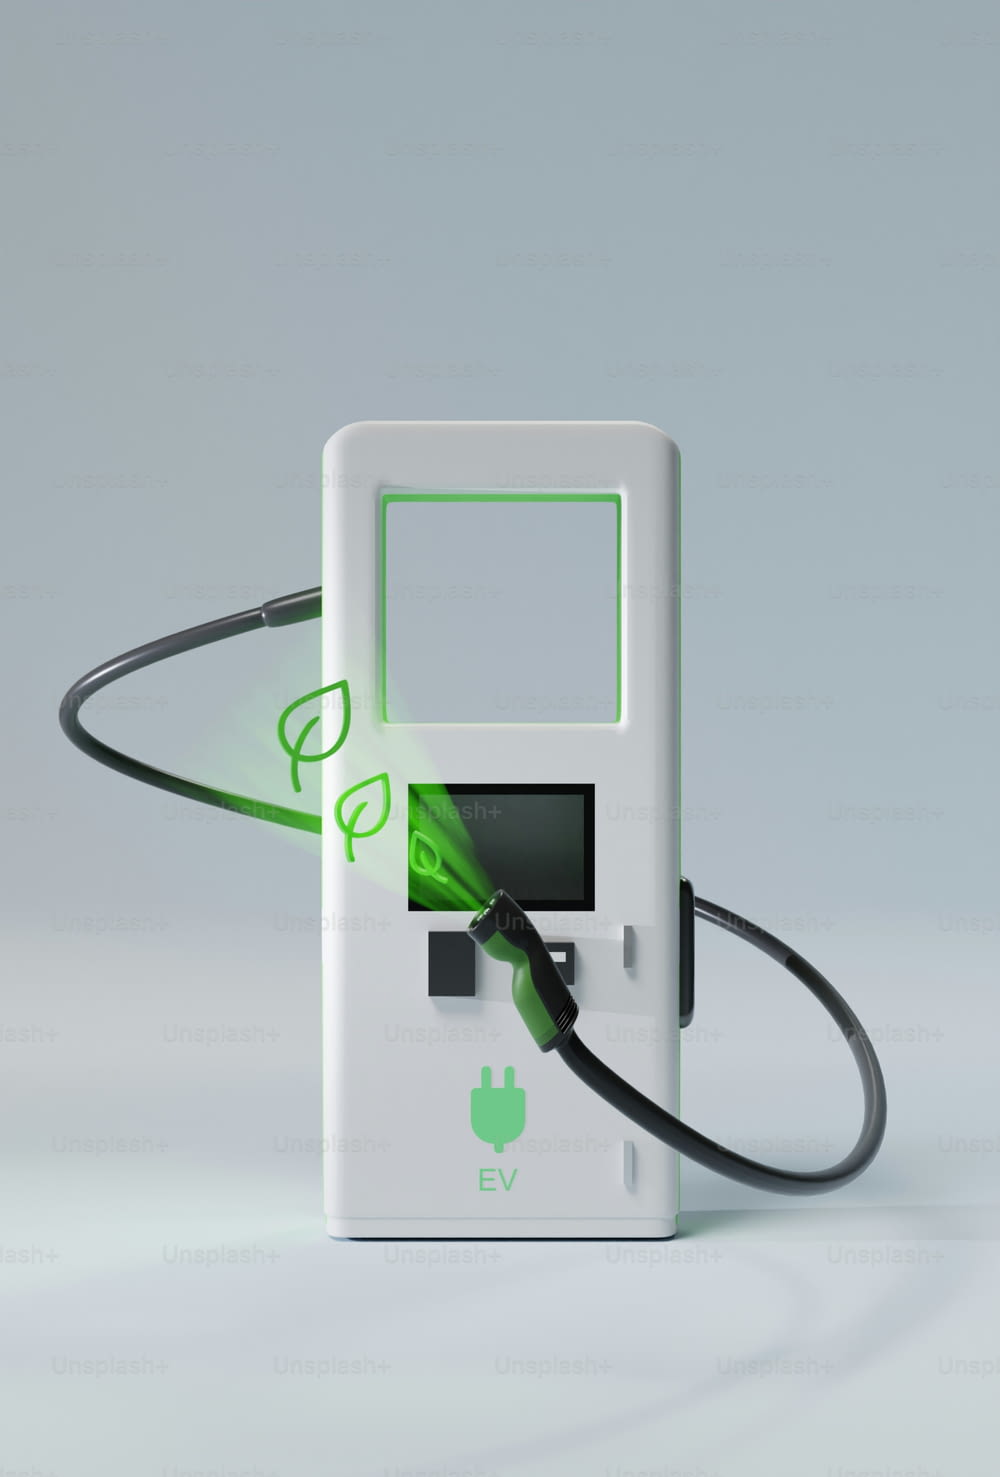 ein elektronisches Gerät mit grünem Licht